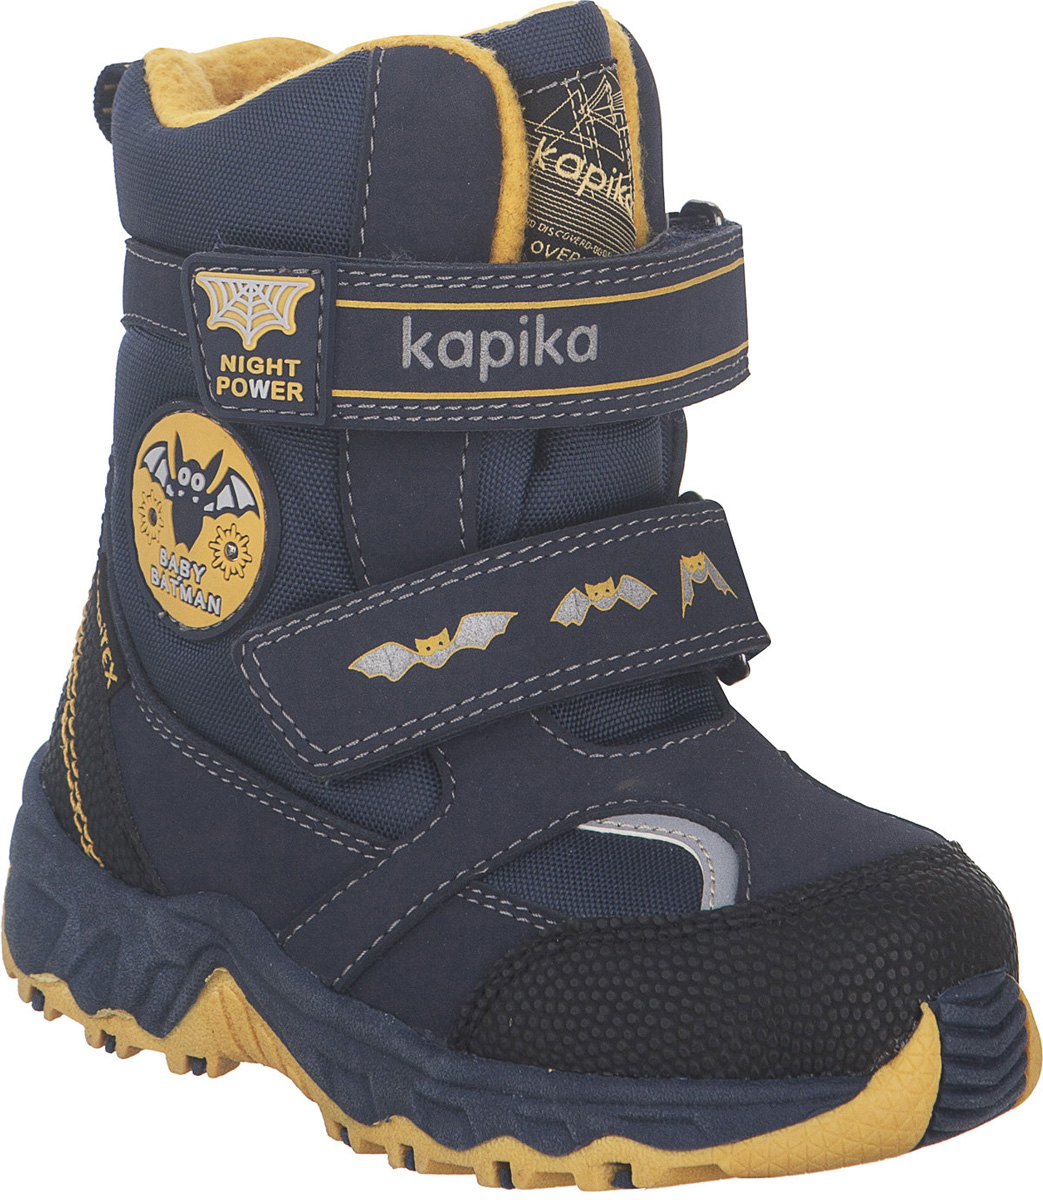 Ботинки для мальчика Kapika KapiTEX, цвет: темно-синий, желтый. 41205-2. Размер 25